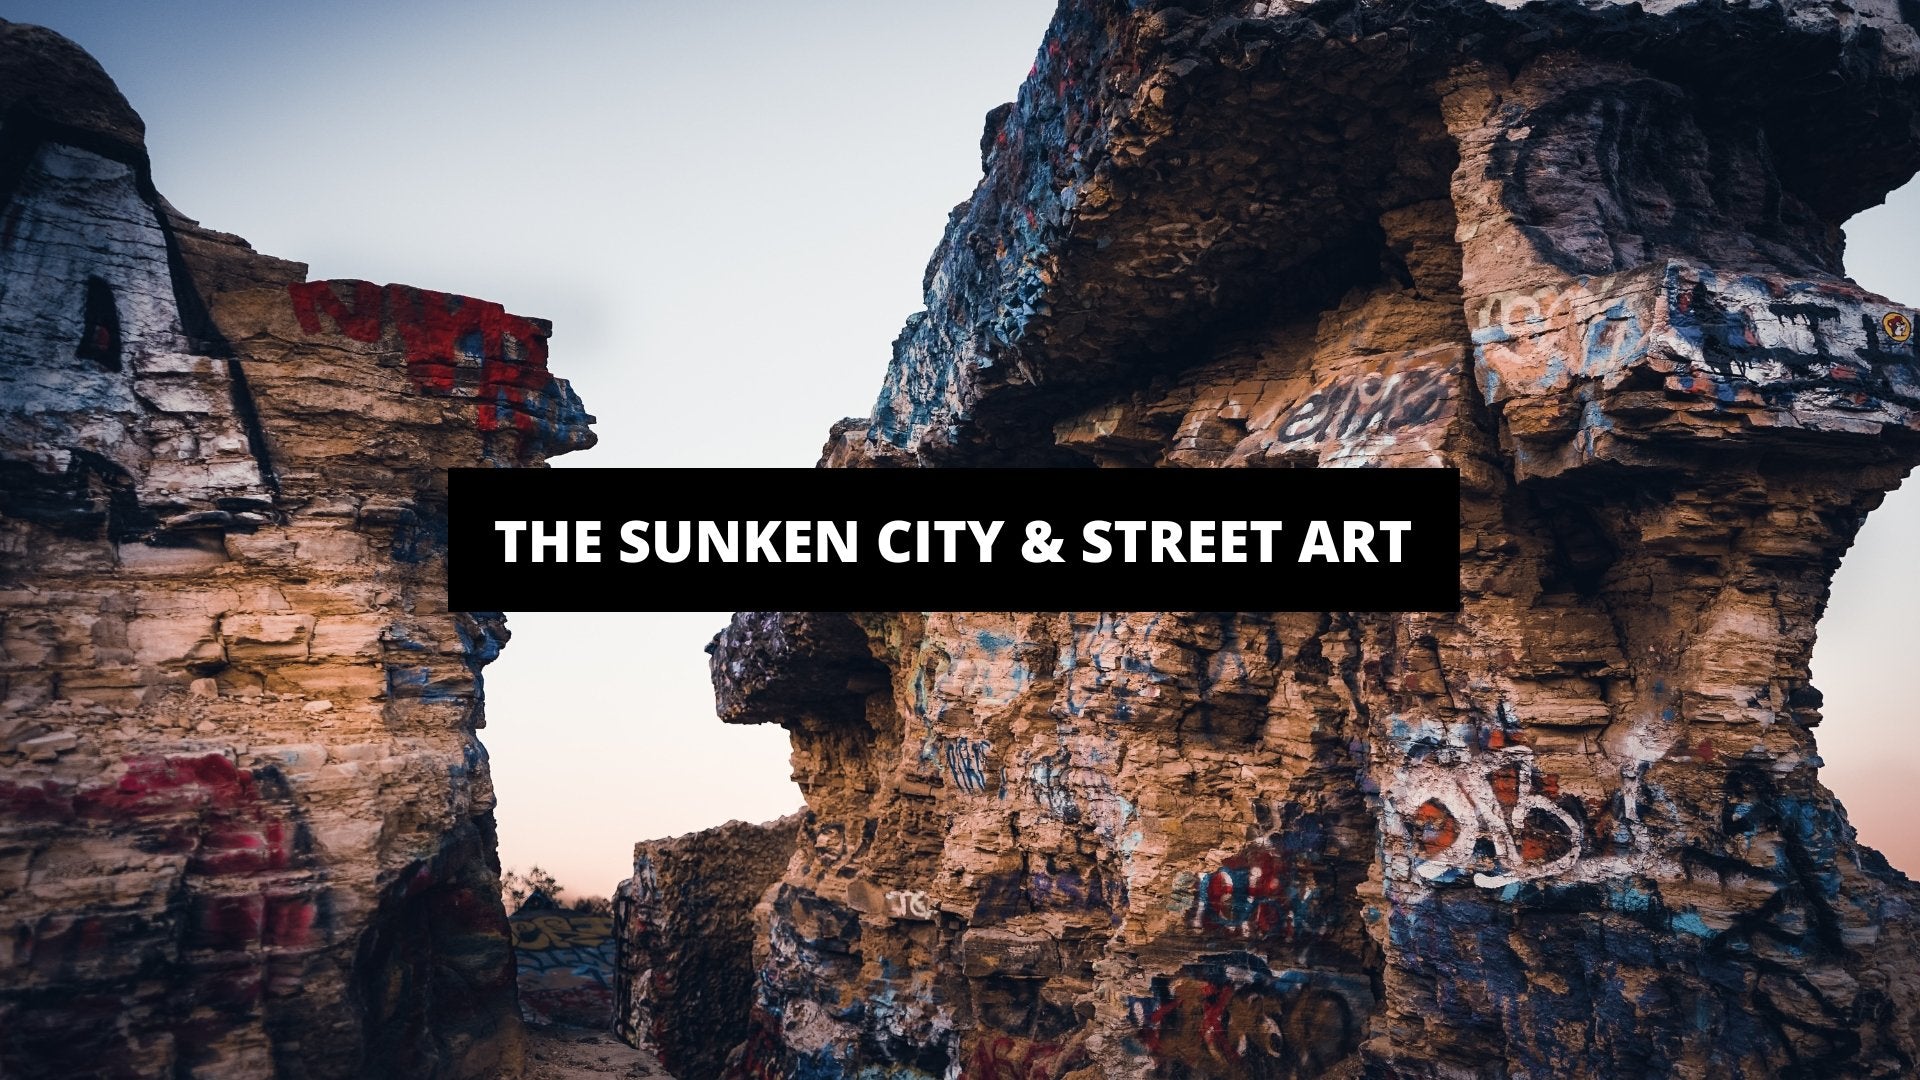 The Sunken City & Street Art - The Trendy Art